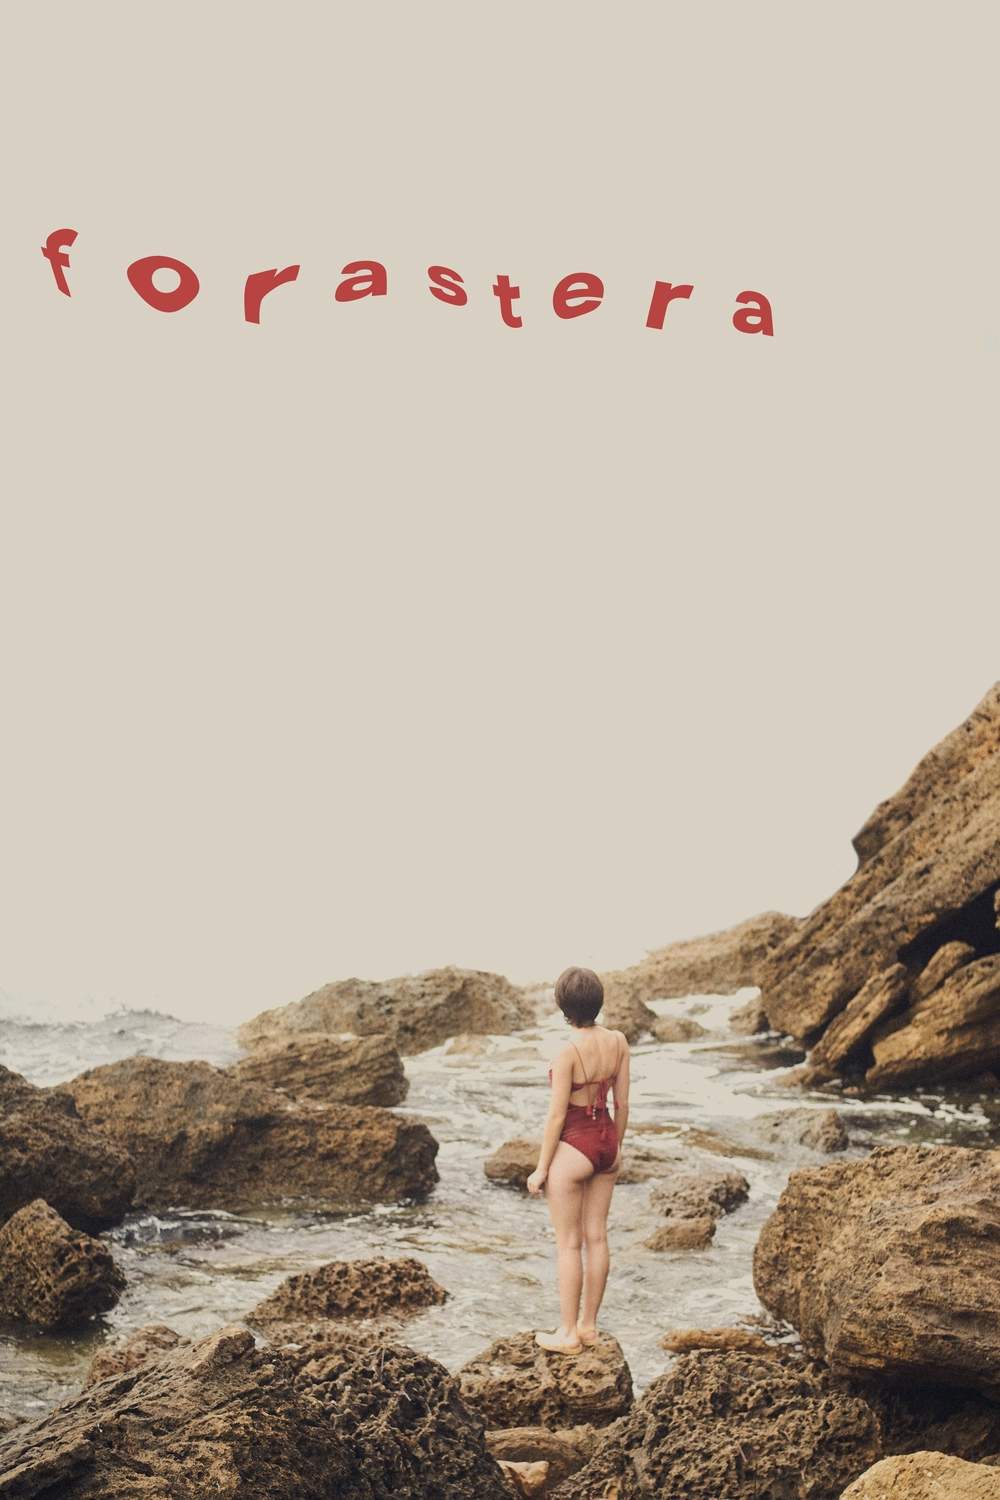 El curtmetratge ‘Forastera’ guanya la secció balear del Festival Internacional de Cinema de Menorca